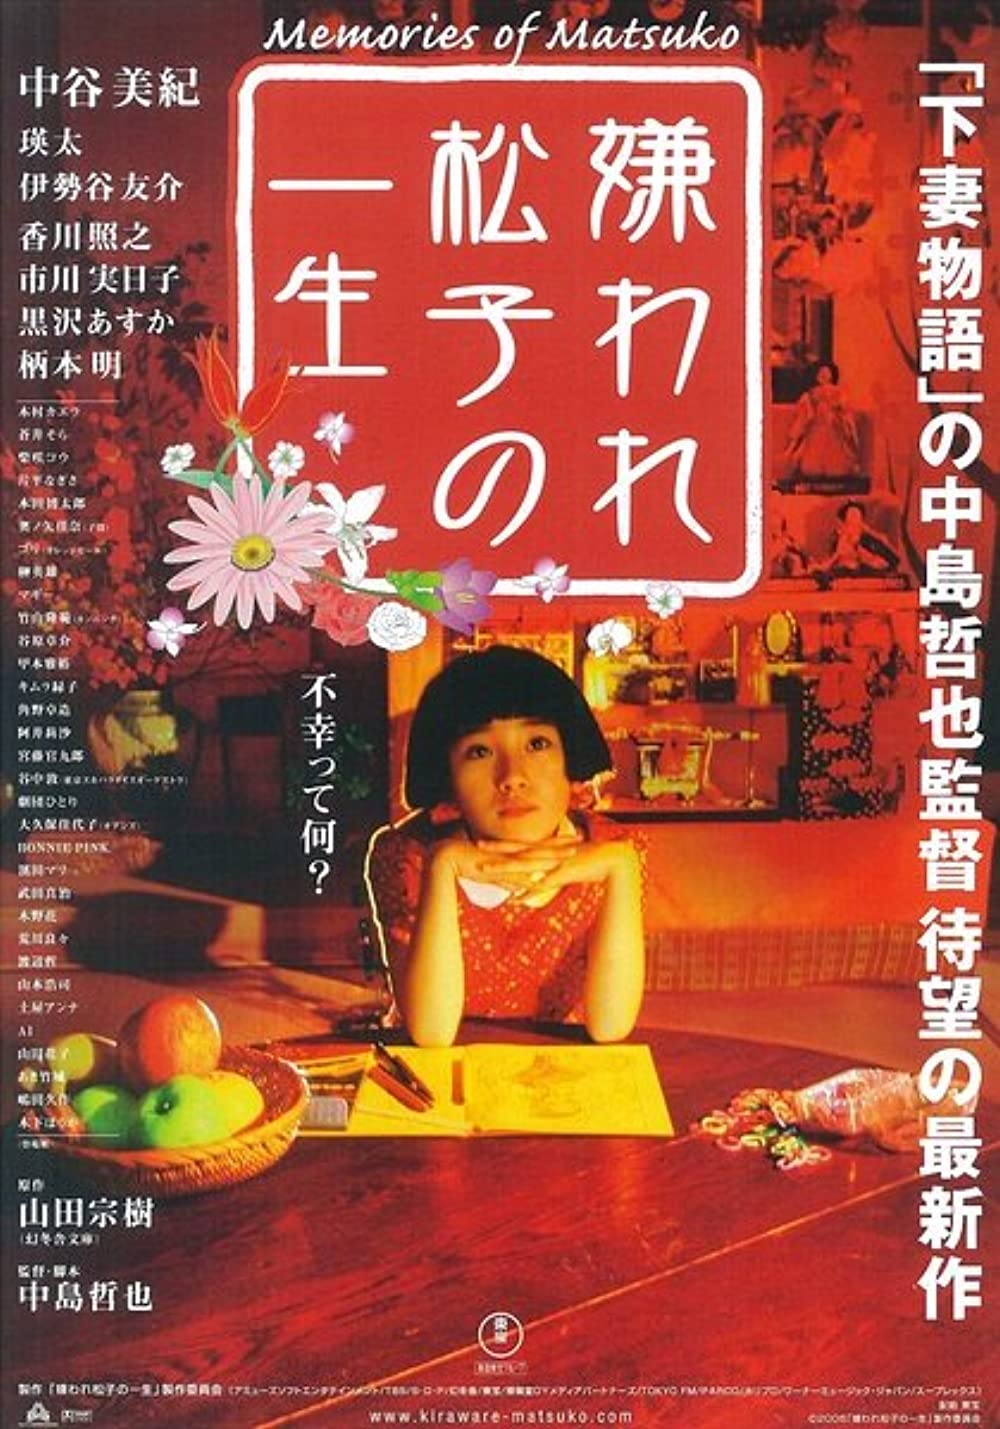 Download Kiraware Matsuko no isshô Movie | Kiraware Matsuko No Isshô Hd, Dvd, Divx